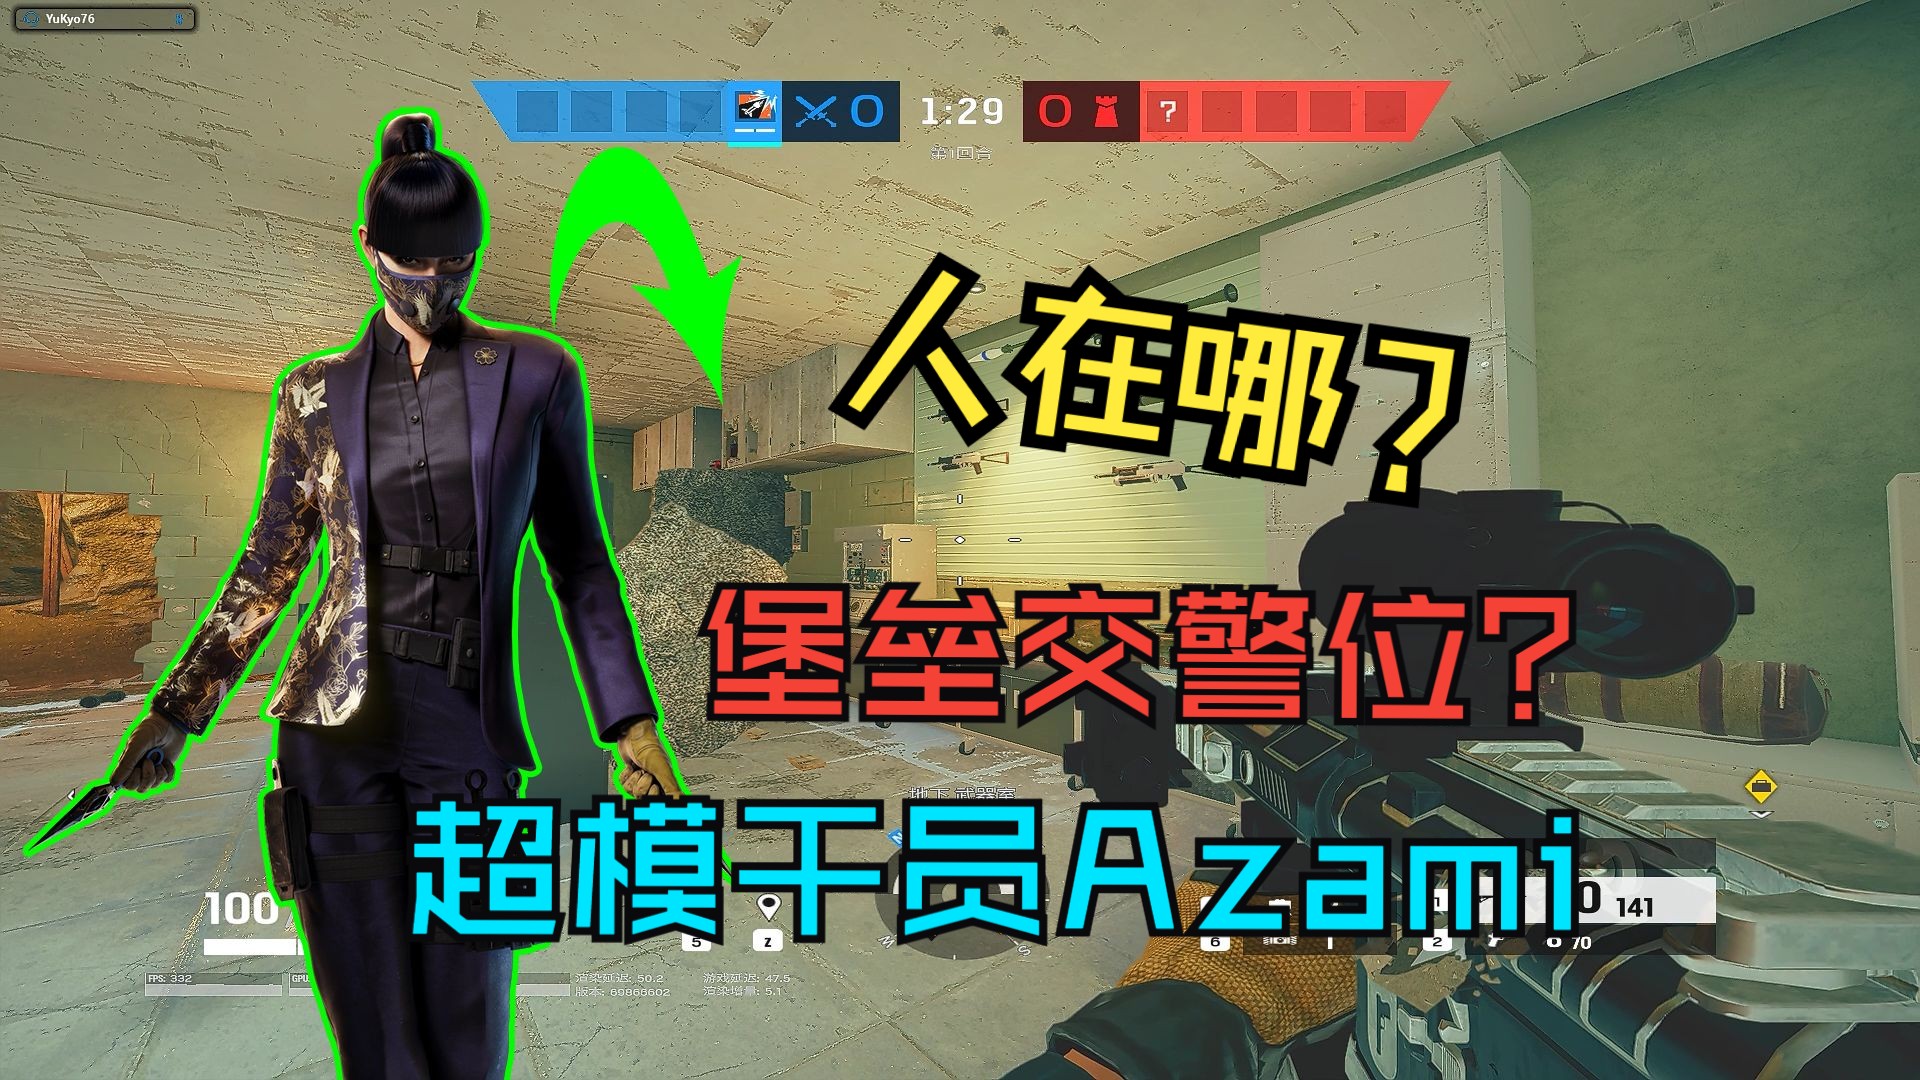 【彩虹六号】俱乐部Azami无敌堡垒交警位？！真·不需要枪法！冠军钻石实战解析！